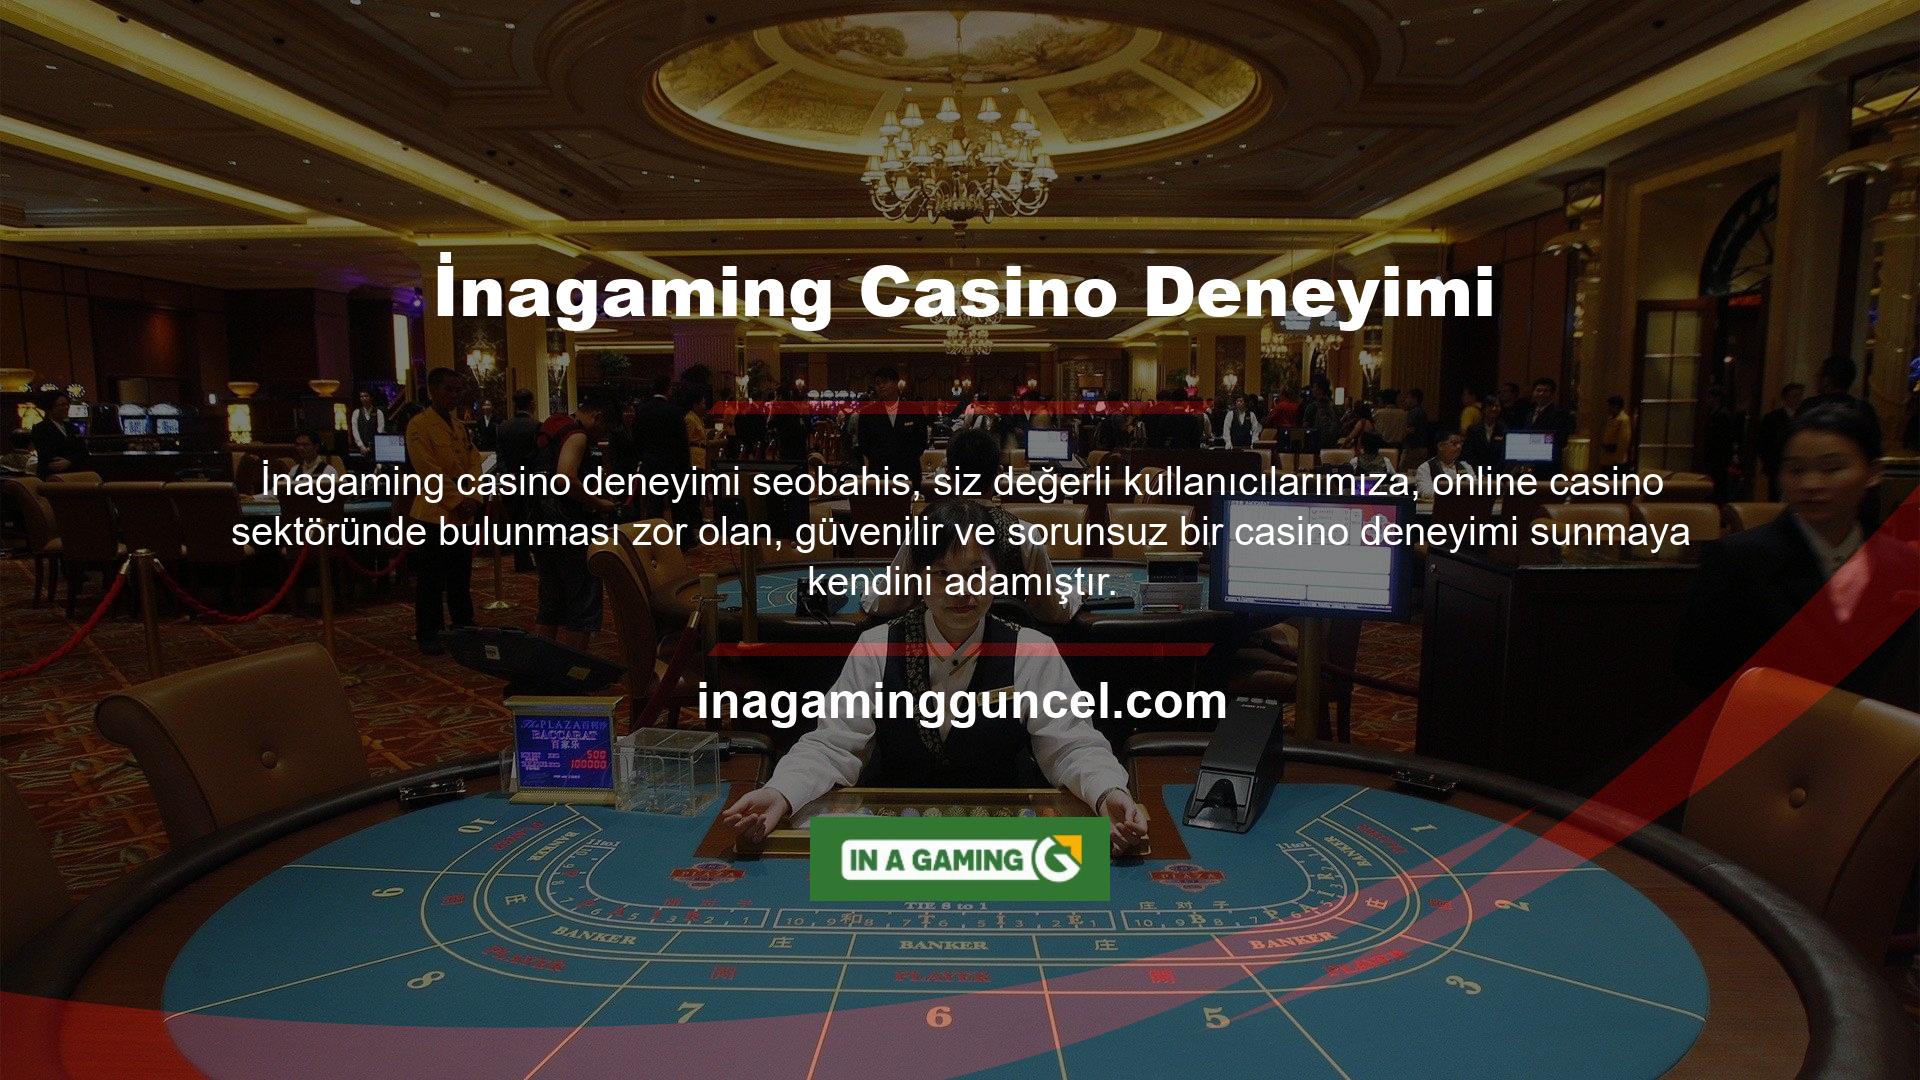 İnagaming, ödeme altyapısı, profesyonel casino sağlayıcıları ve tüm kullanıcıların yararlandığı bonuslarla sınırsız eğlencede sizi ön planda tutarak aktif ve güvende kalmanızı sağlar